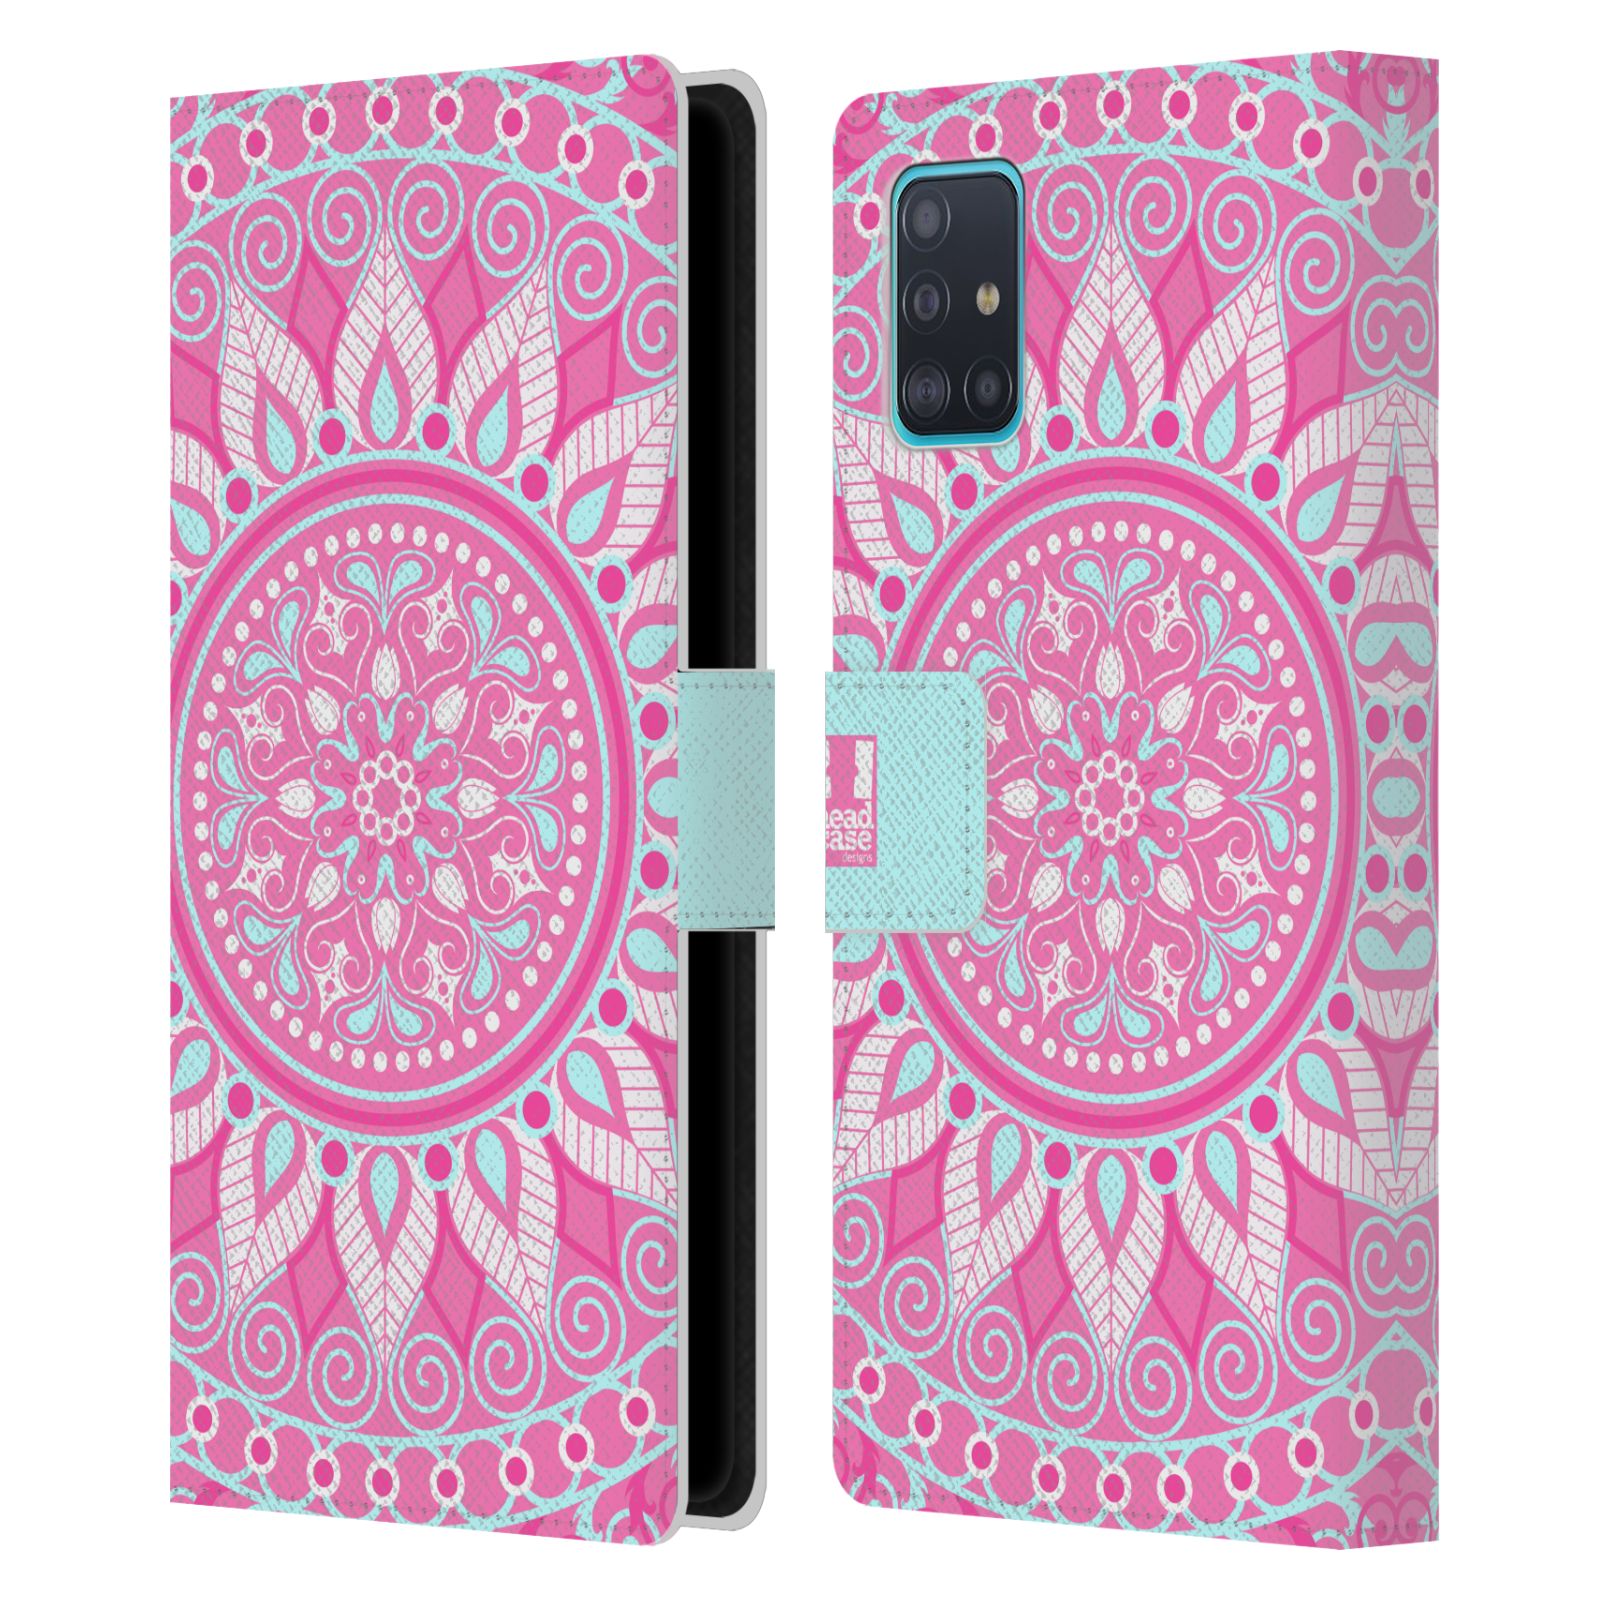 Pouzdro na mobil Samsung Galaxy A51 - HEAD CASE - Mandala růžová